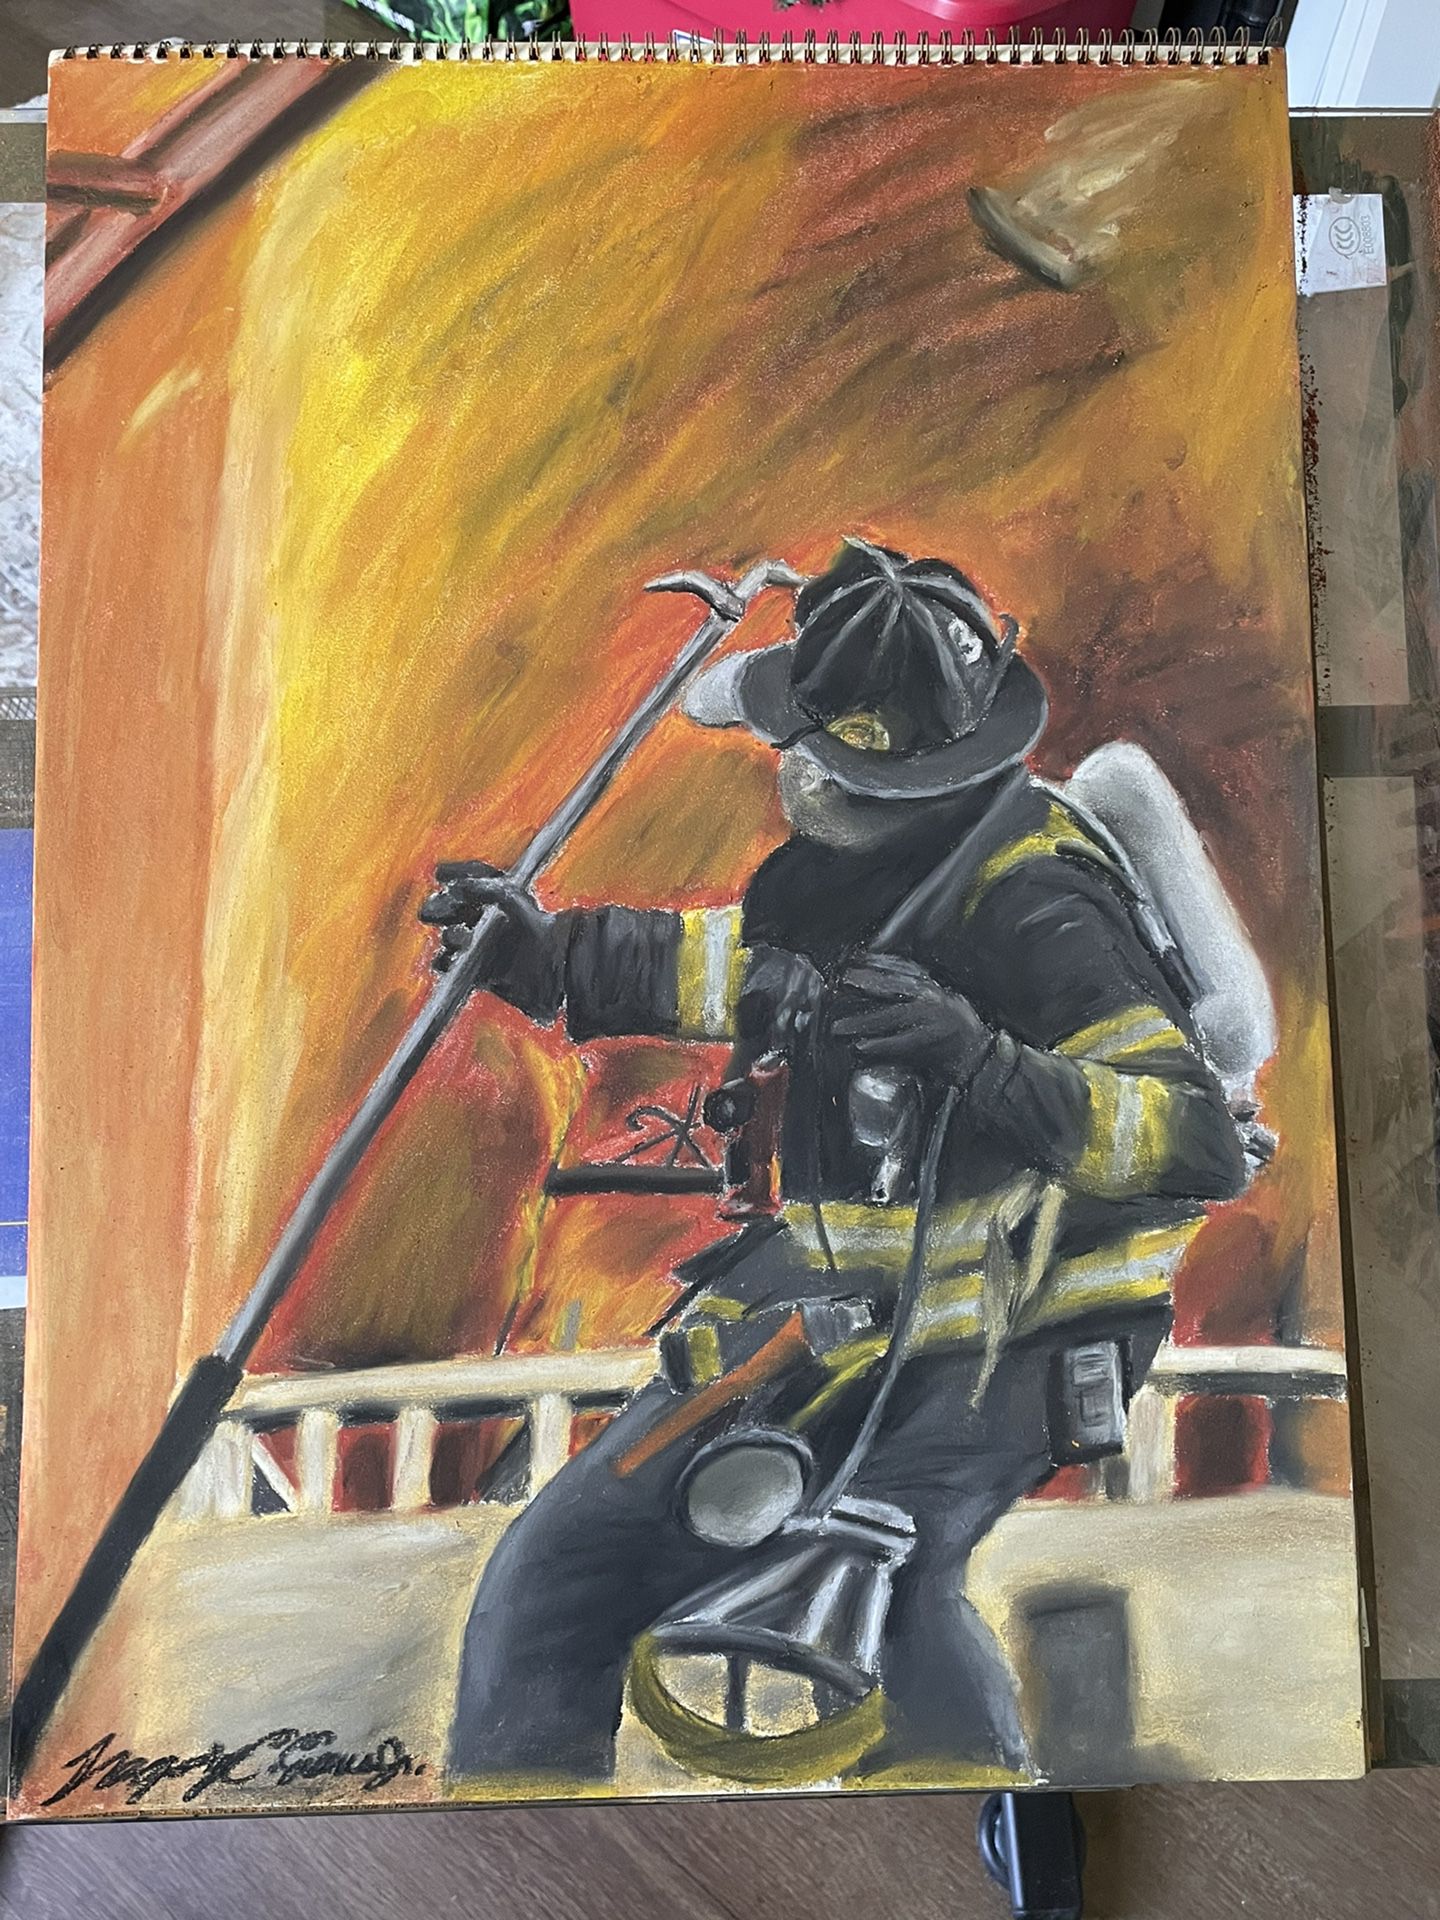 Firefighter 